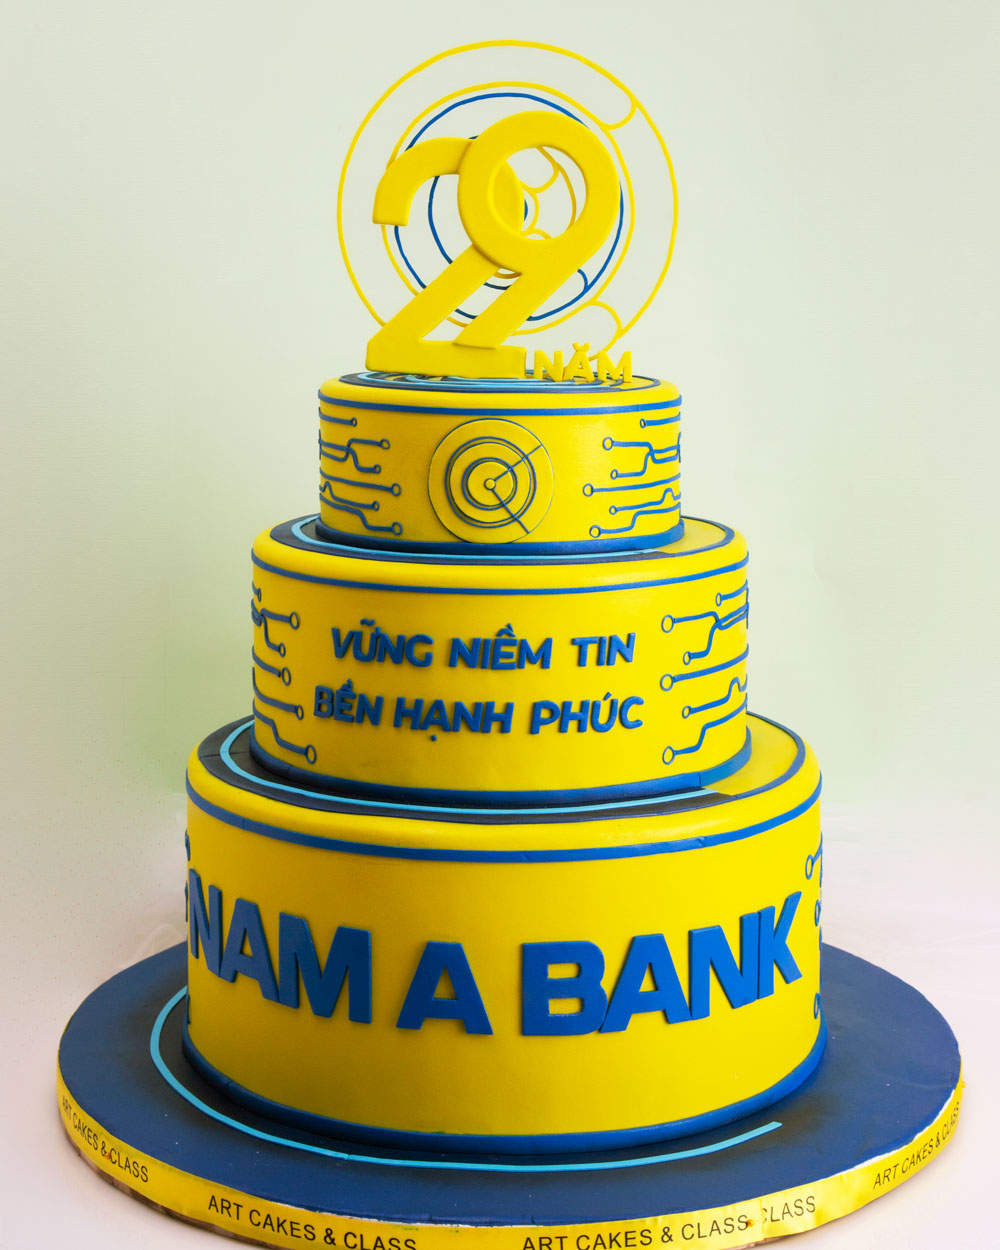 Bạn đang tìm kiếm một món quà đặc biệt để kỷ niệm sinh nhật của nhân viên Nam A Bank? Đừng bỏ lỡ bánh kỷ niệm sinh nhật Nam A Bank với thiết kế độc đáo và hương vị thơm ngon. Bánh sẽ là một món quà đặc biệt và ý nghĩa cho người nhận.